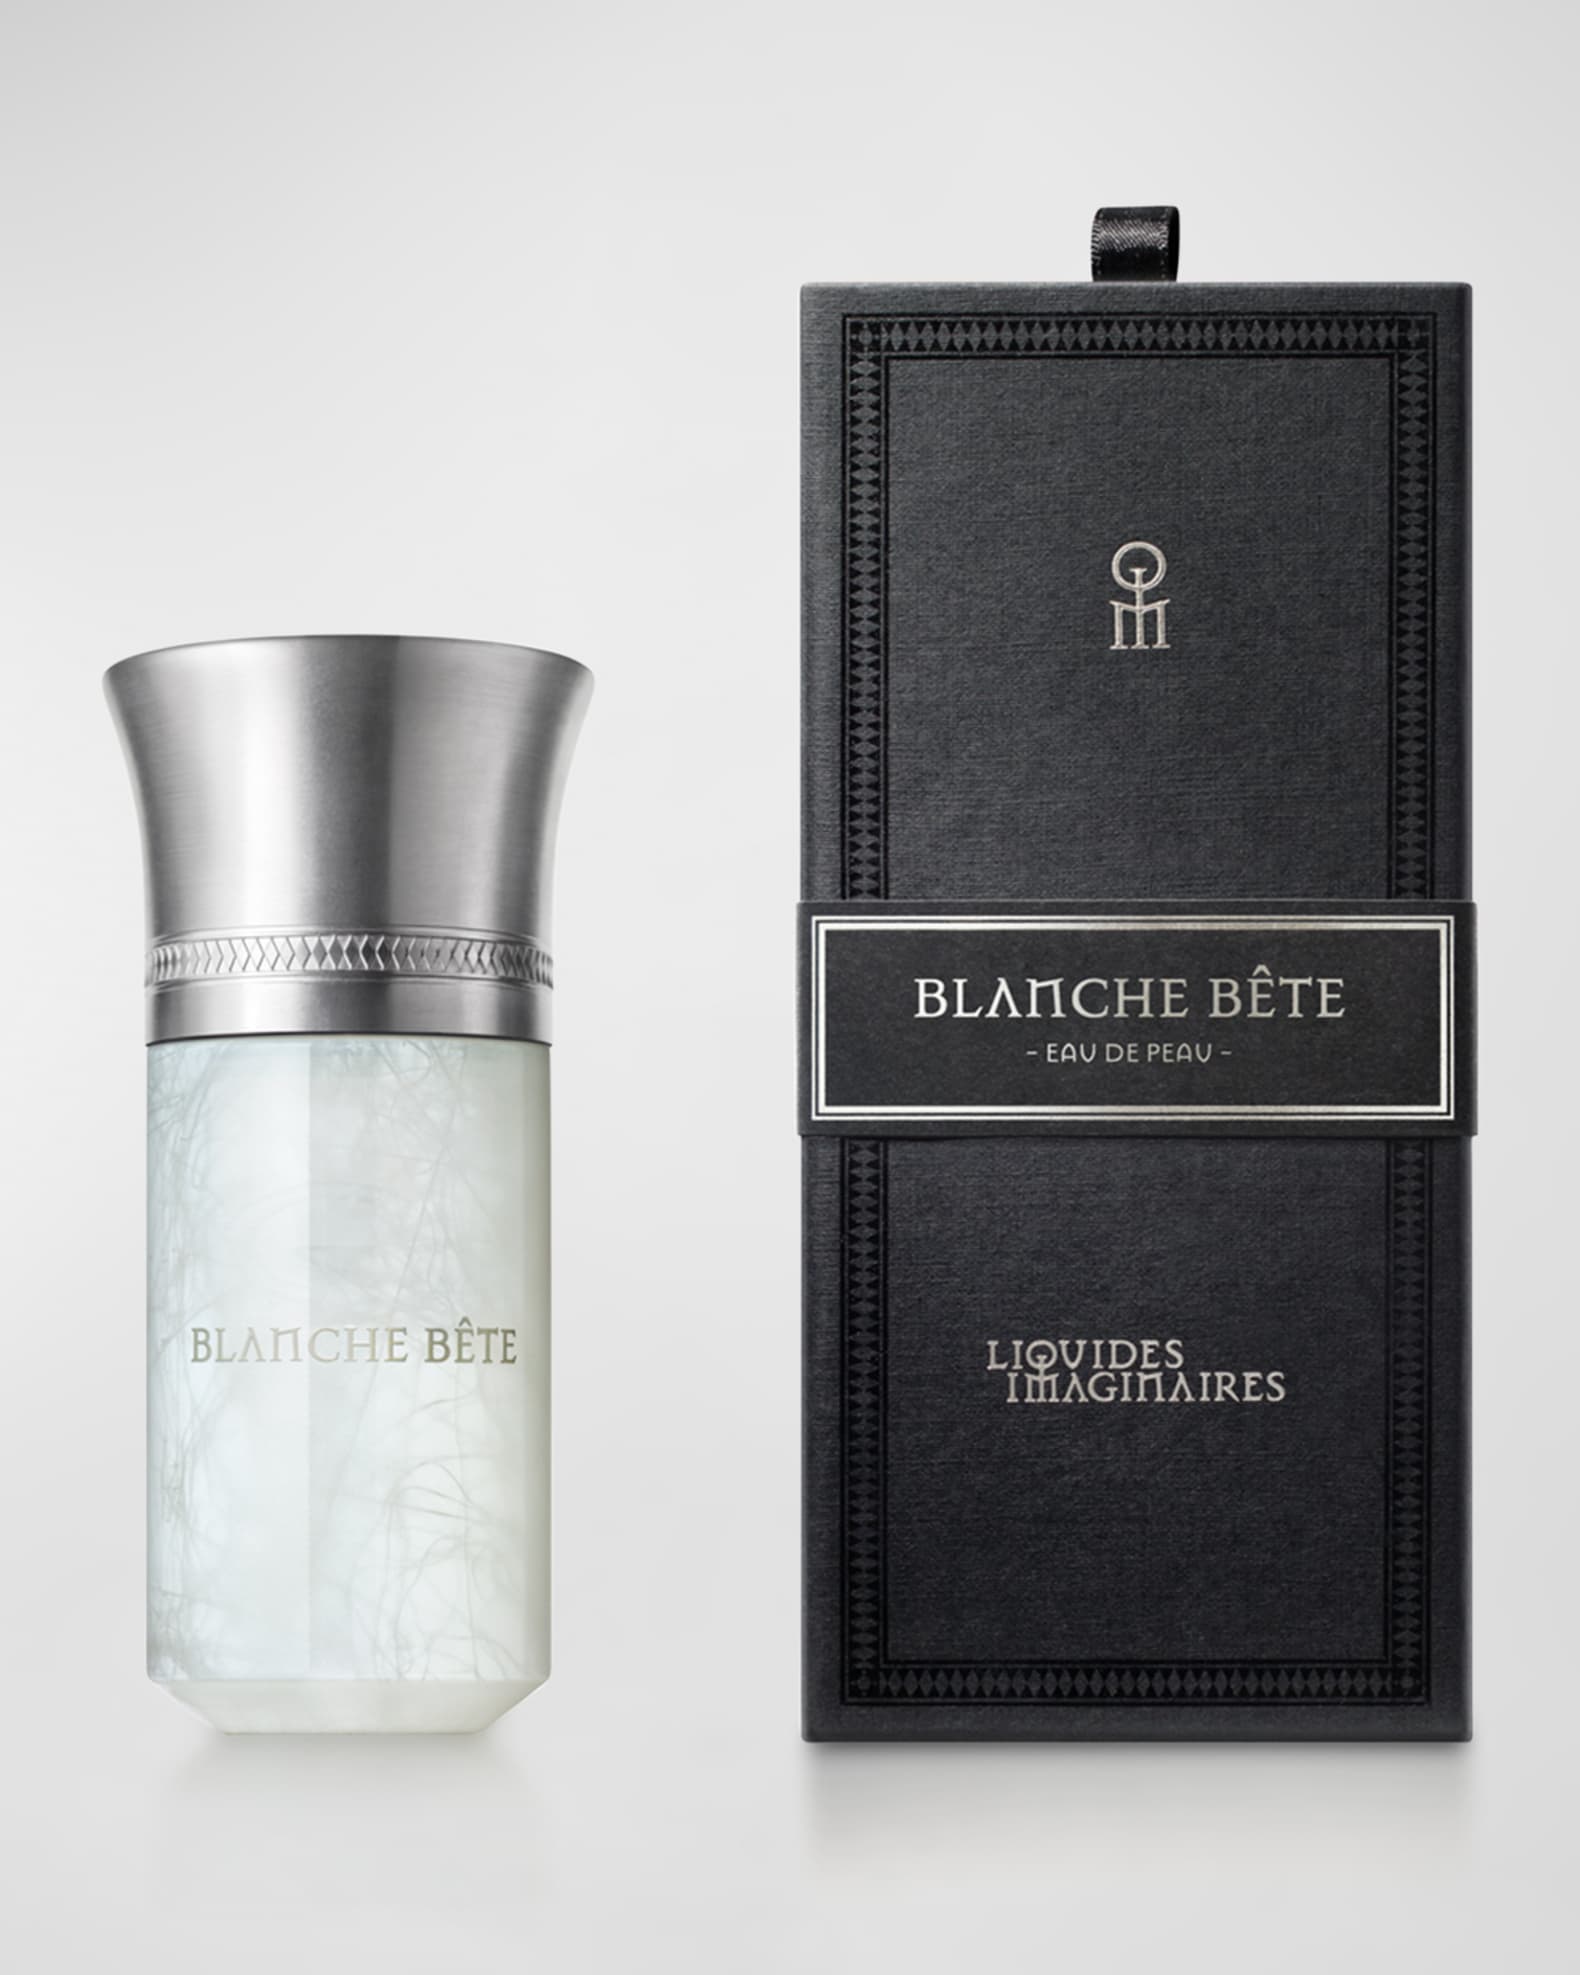 Liquides Imaginaires 3.4 oz. Blanche Bete Eau de Parfum